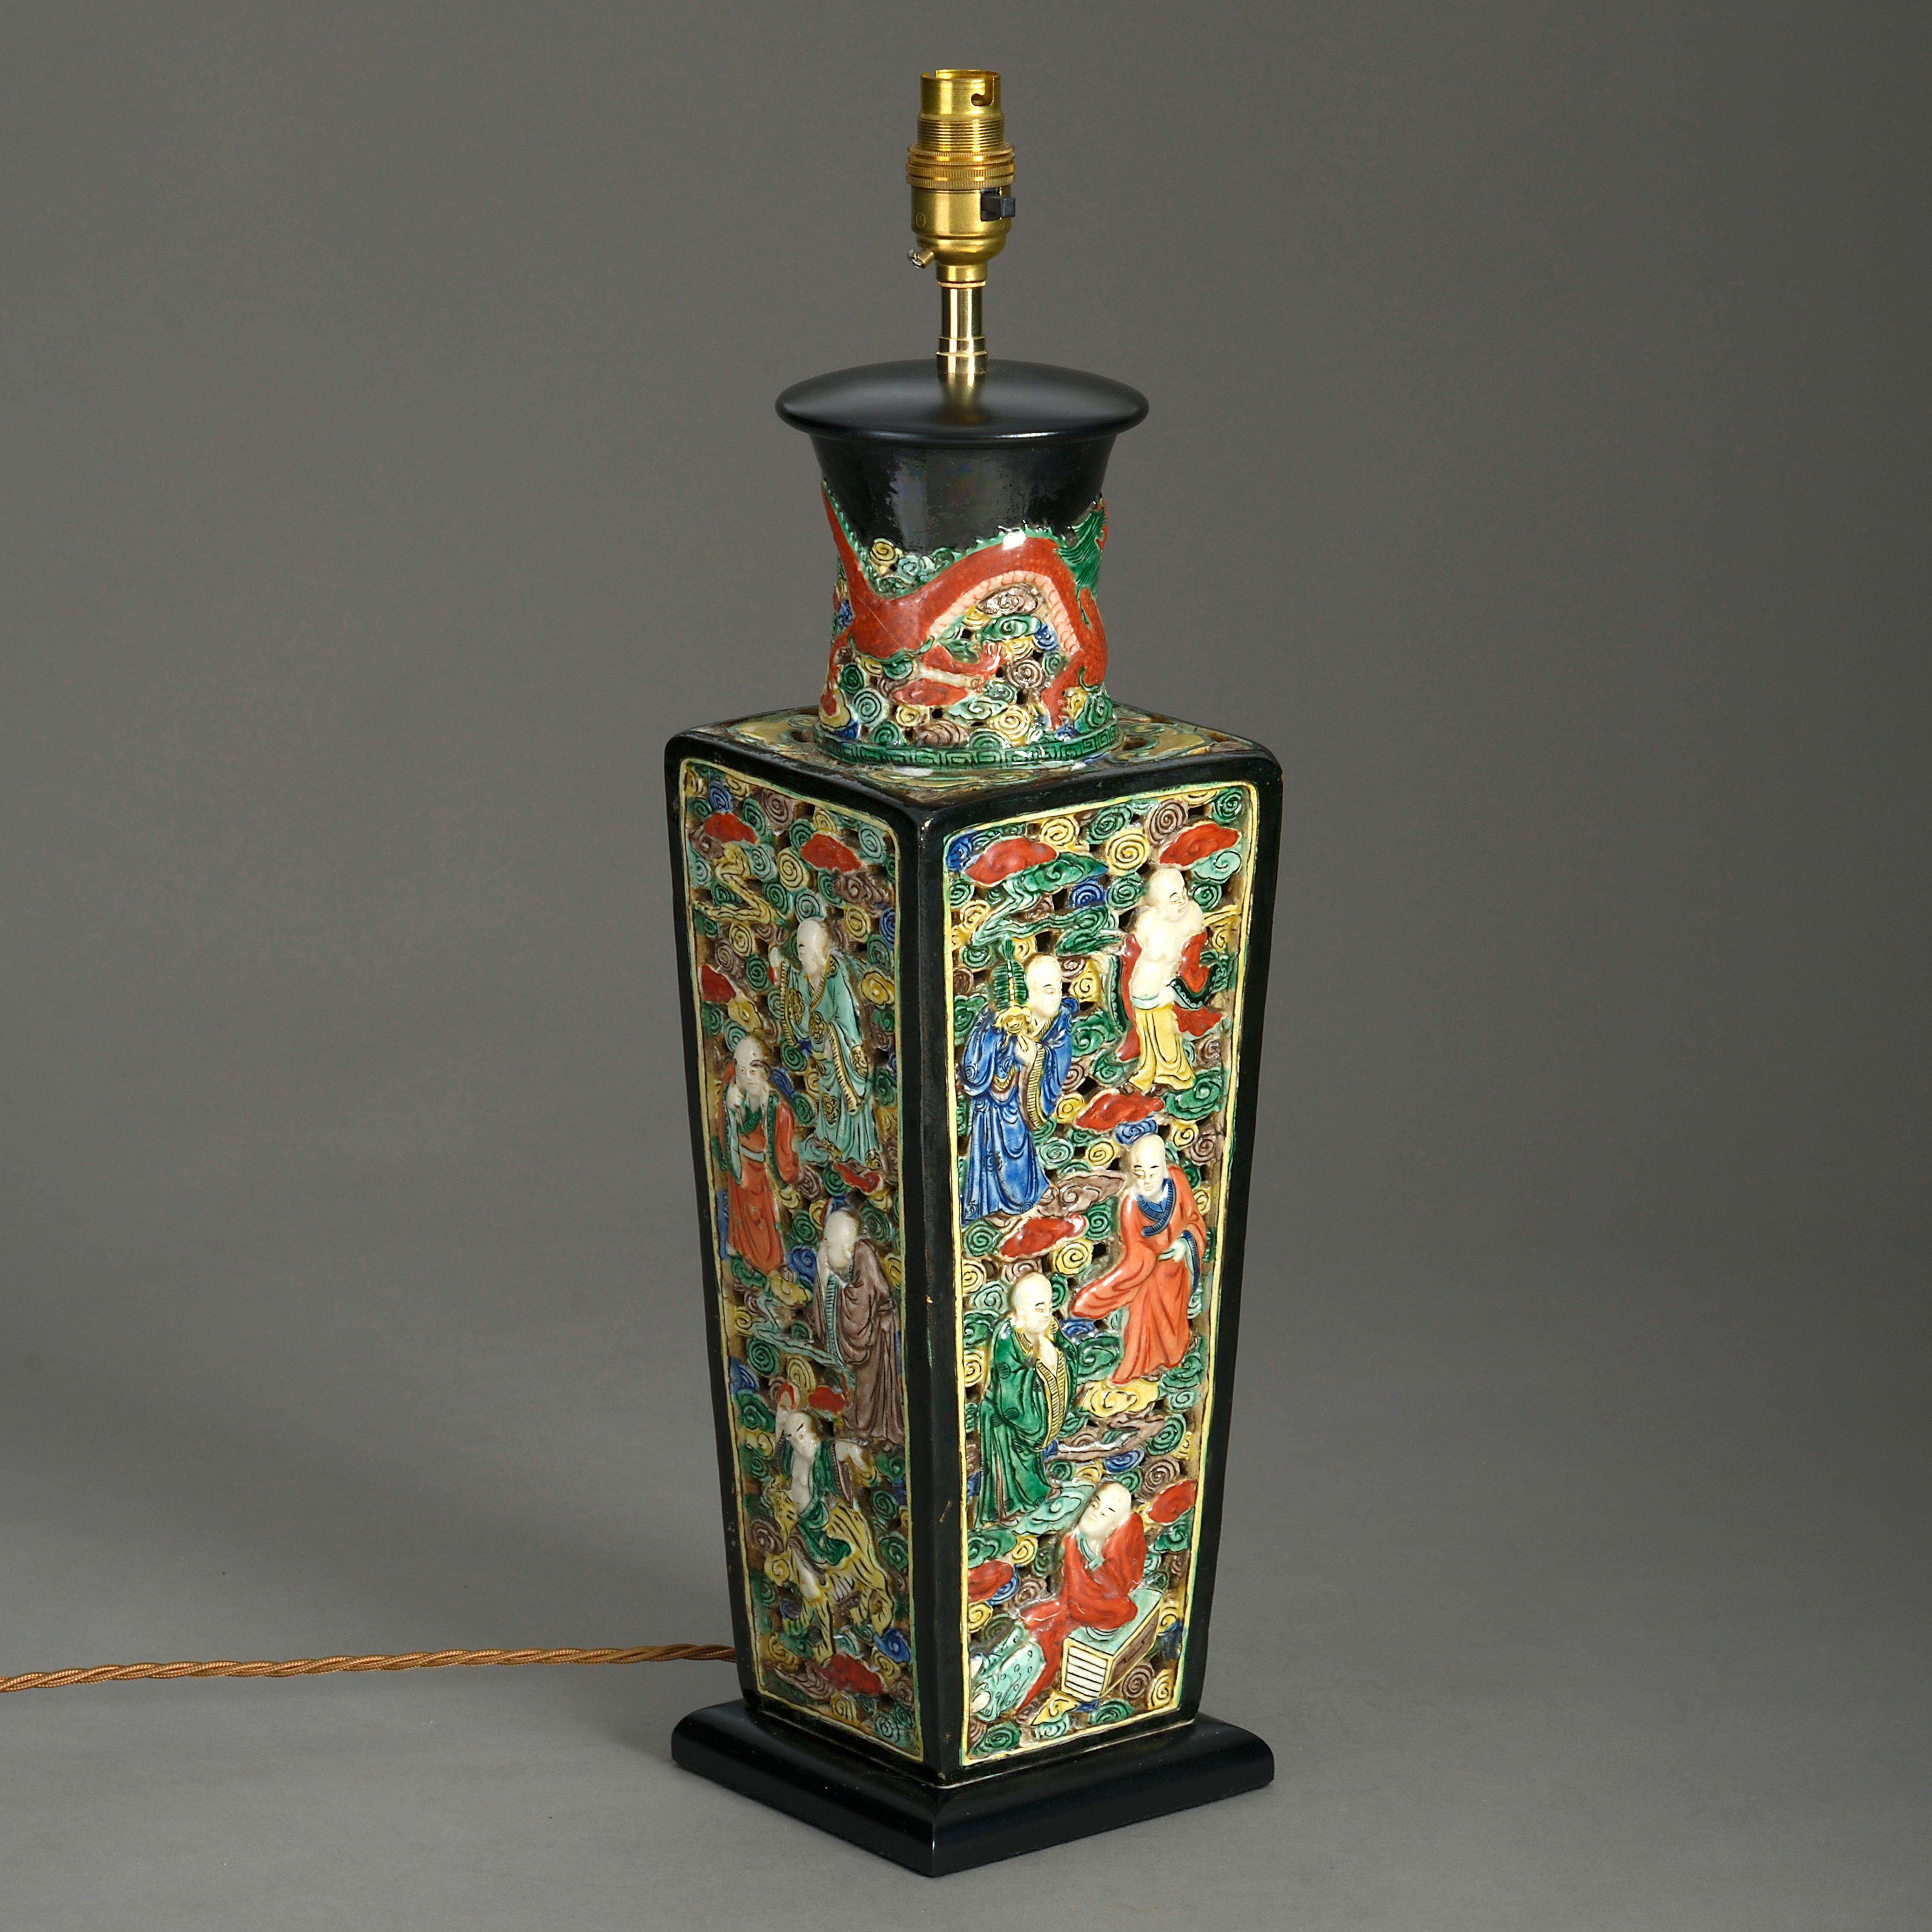 Eine polychrome Vase aus der Mitte des 19. Jahrhunderts in quadratischer, sich verjüngender Form, der schwarz glasierte Hals mit Drachenmotiven, die Seiten aufwändig mit figürlichen Szenen auf durchbrochenem, rollendem Grund gearbeitet. Jetzt als